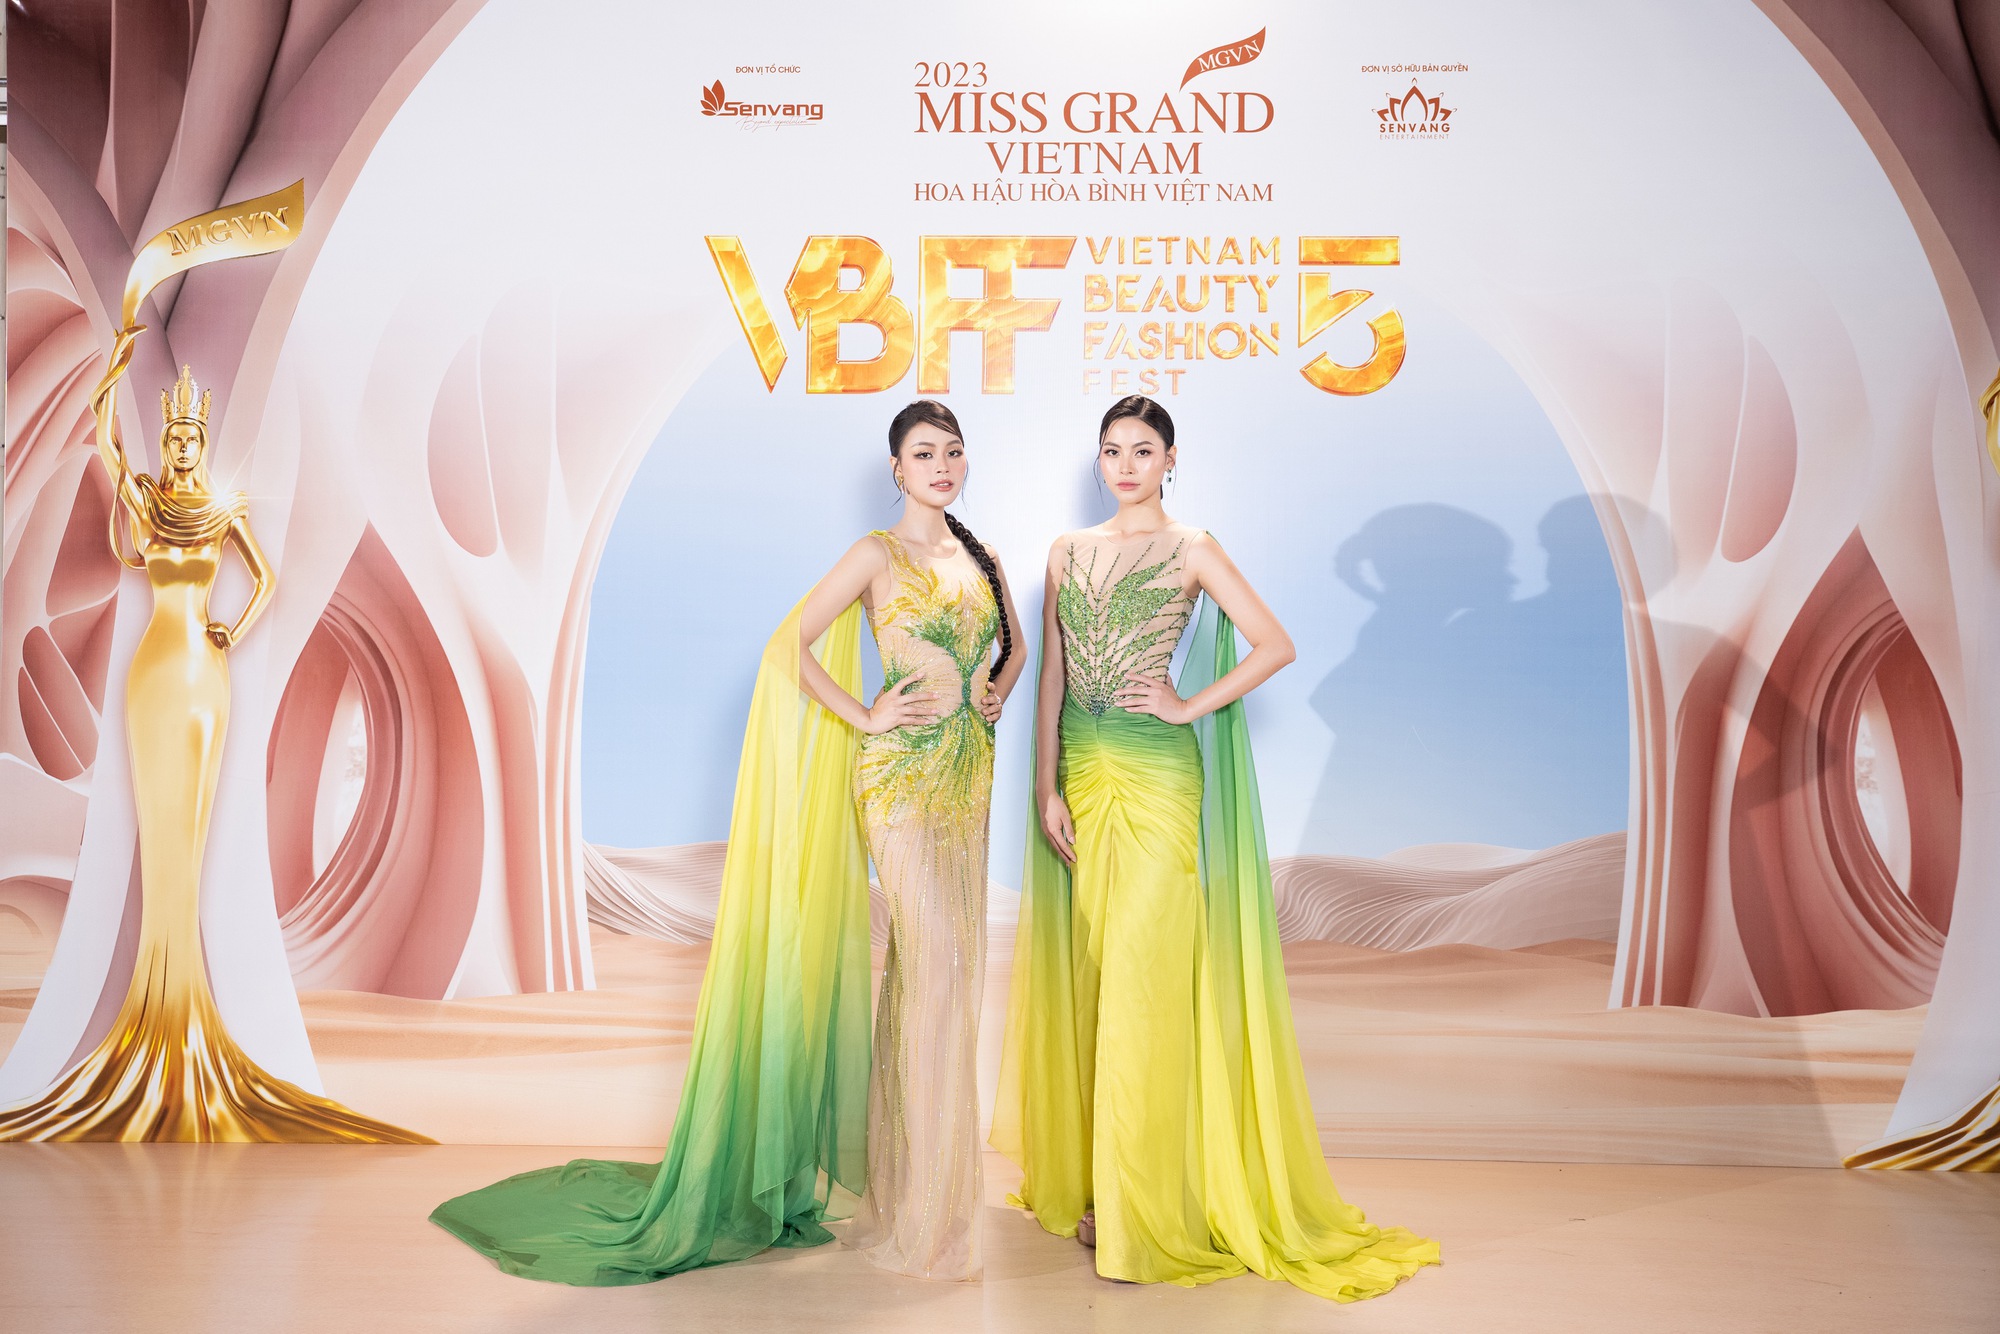 Á hậu Đào Hiền và chị gái Đào Hà gây ấn tượng trên sàn diễn thời trang - Ảnh 4.